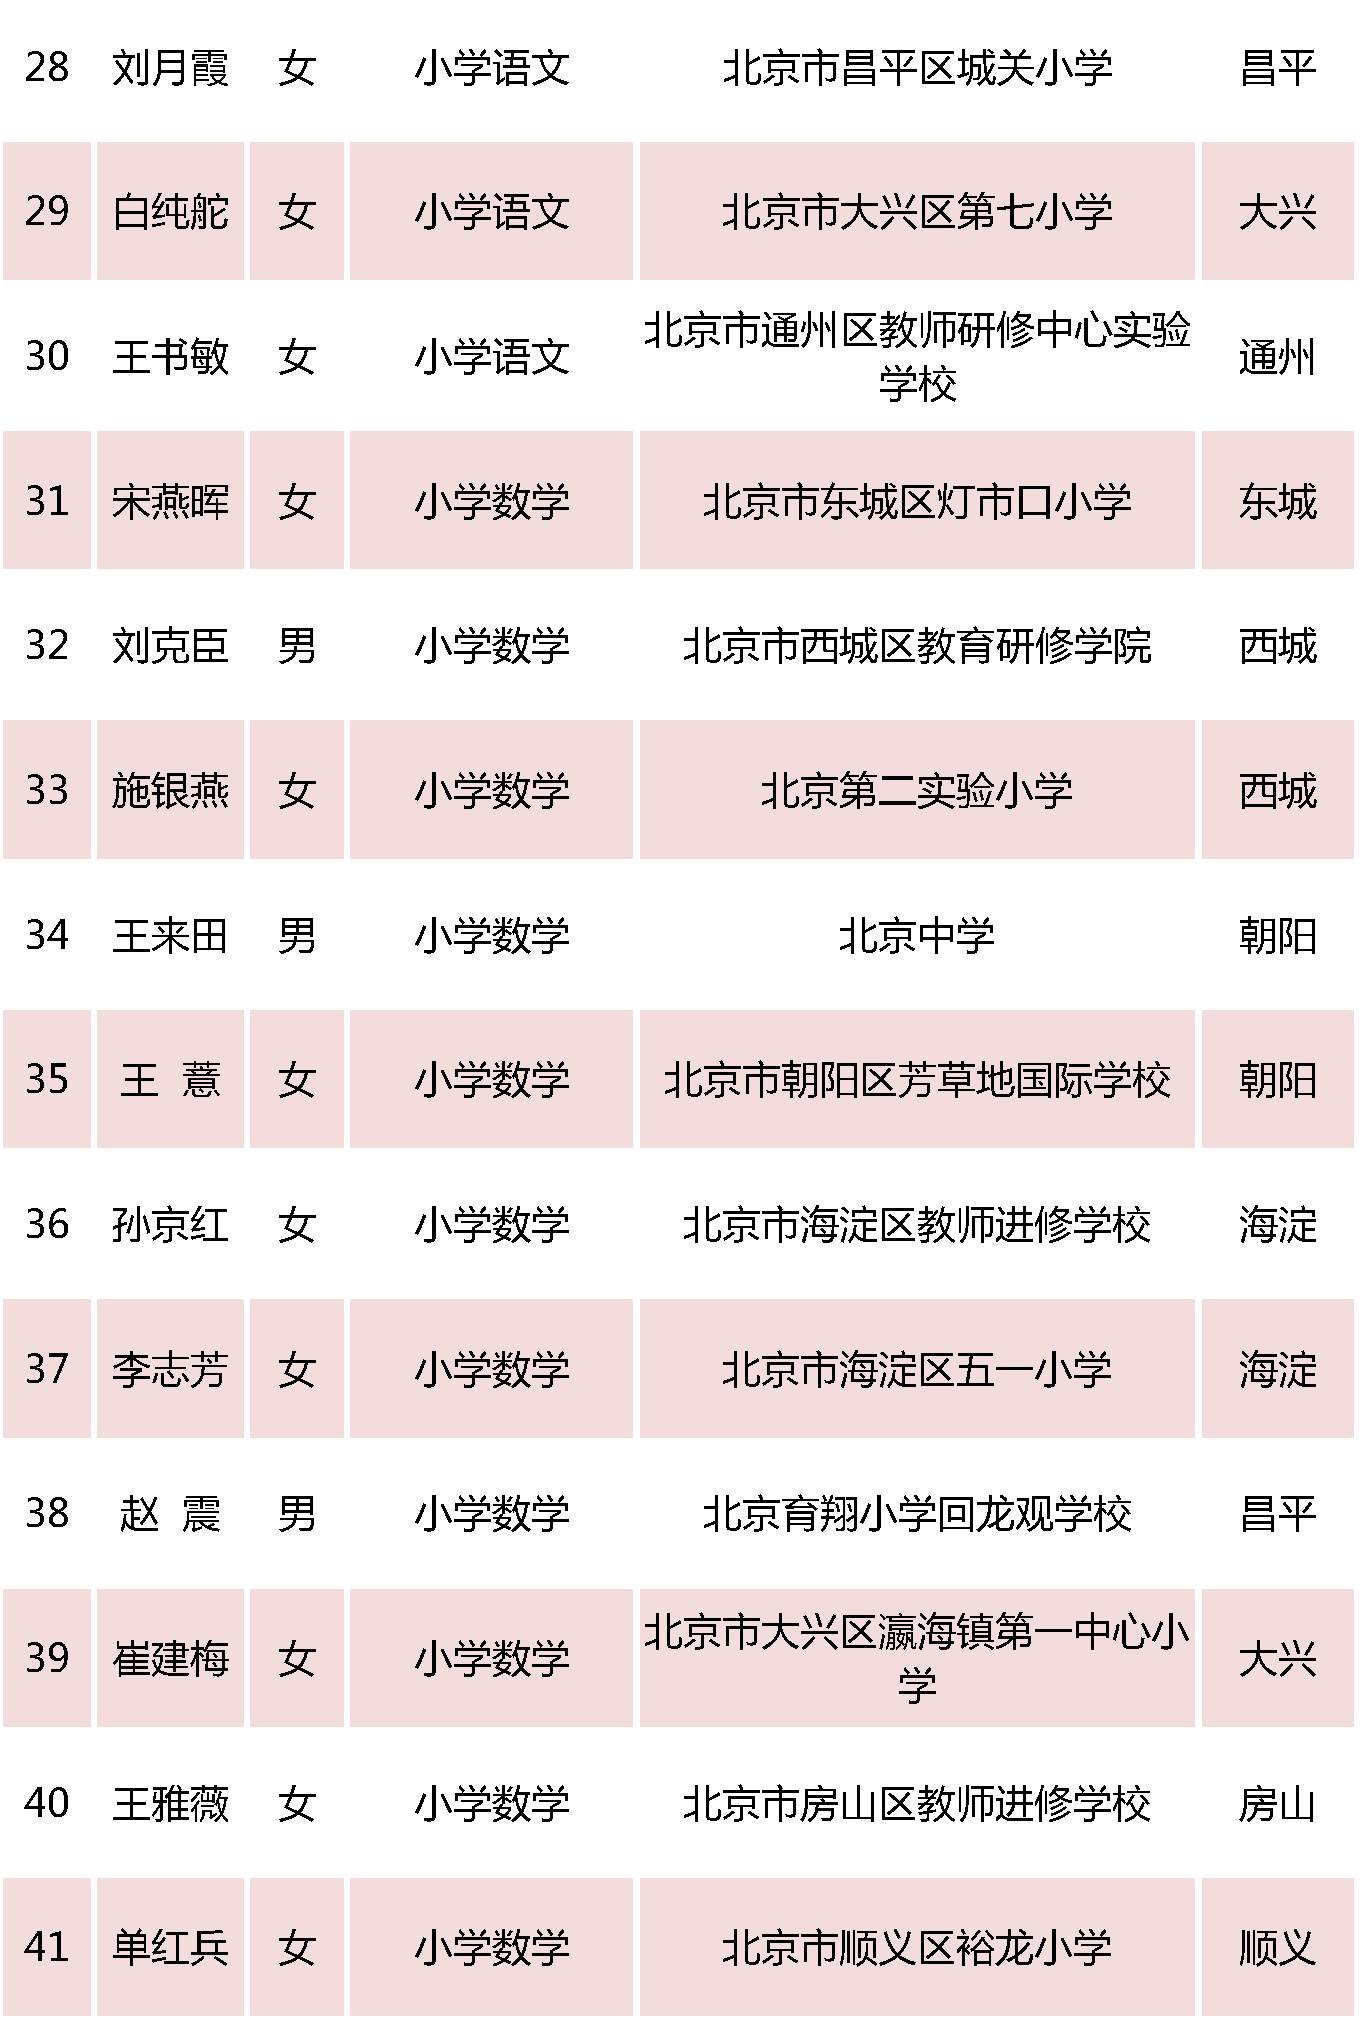 北京特级教师名单3